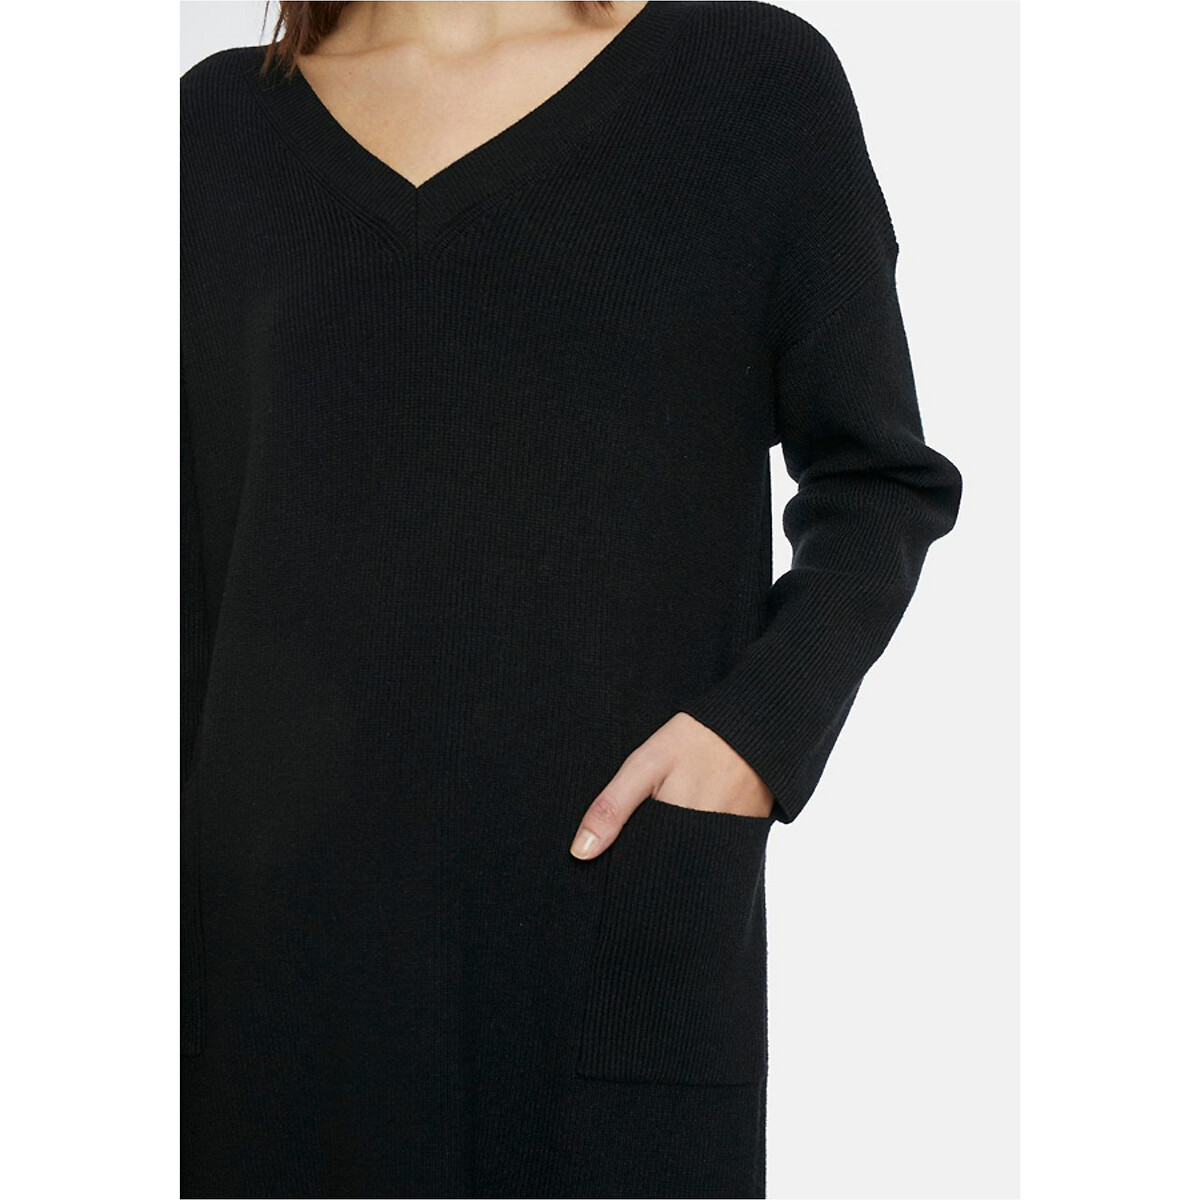 Платье-пуловер La Redoute Короткое с карманами S черный, размер S - фото 4